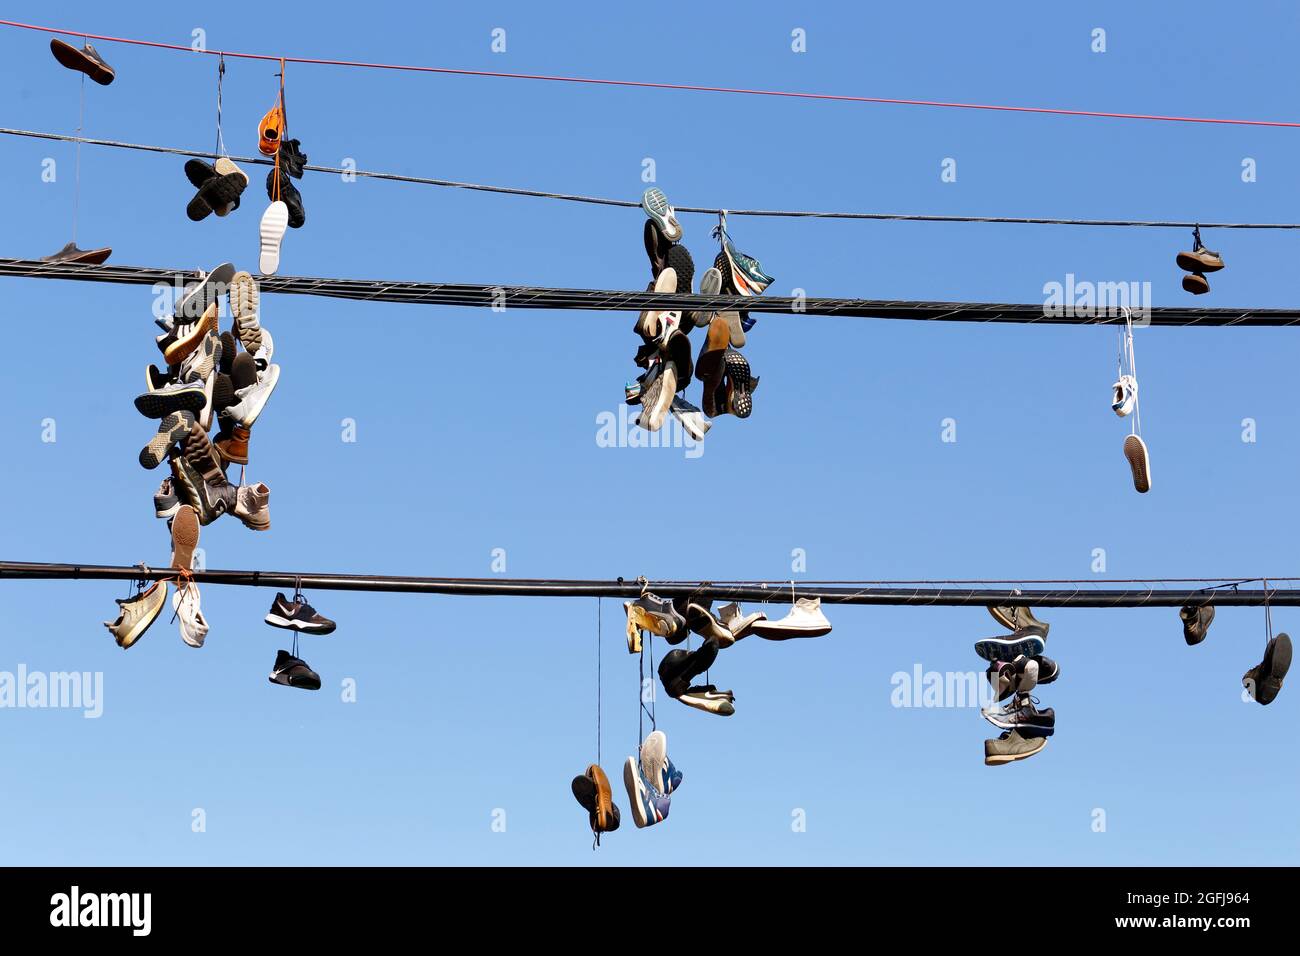 chaussures, baskets accrochées à un fil téléphonique contre un ciel bleu ensoleillé ; baskets attachées ensemble et jetées sur une ligne électrique. Banque D'Images